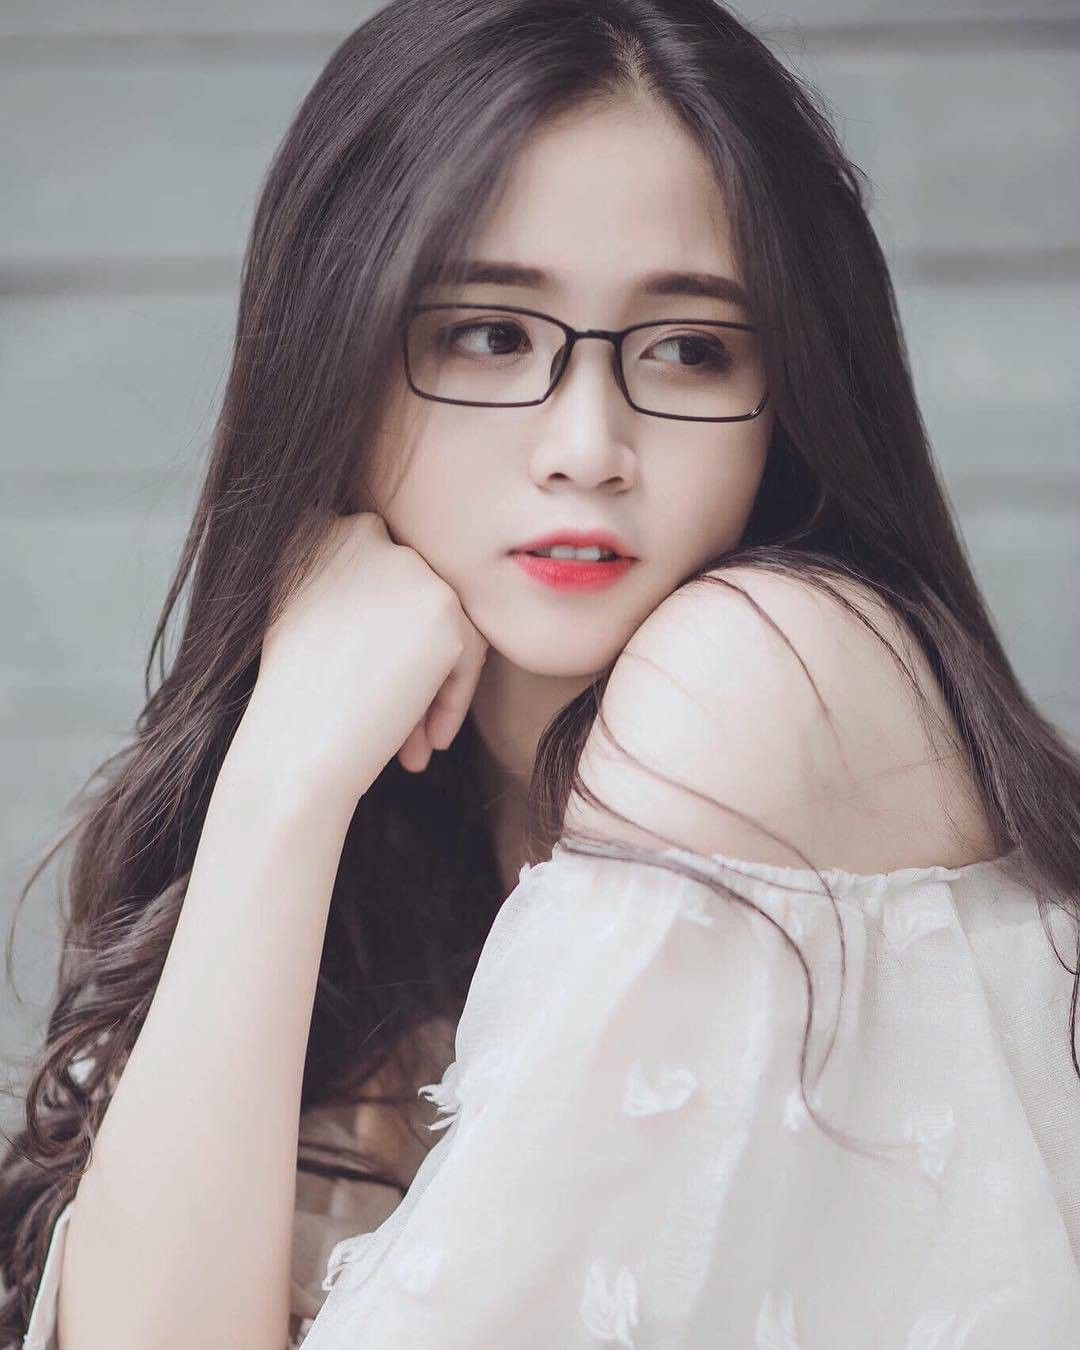 Với nét đẹp tự nhiên và mái tóc dài óng ả, gái đẹp Việt Nam là điều đáng để ngắm nhìn. Trong hình ảnh này, bạn có thể thấy sự thanh lịch và tinh tế trong vẻ đẹp của họ. Hãy cùng ngắm nhìn và khám phá thế giới đầy màu sắc của các cô gái tuyệt đẹp này.